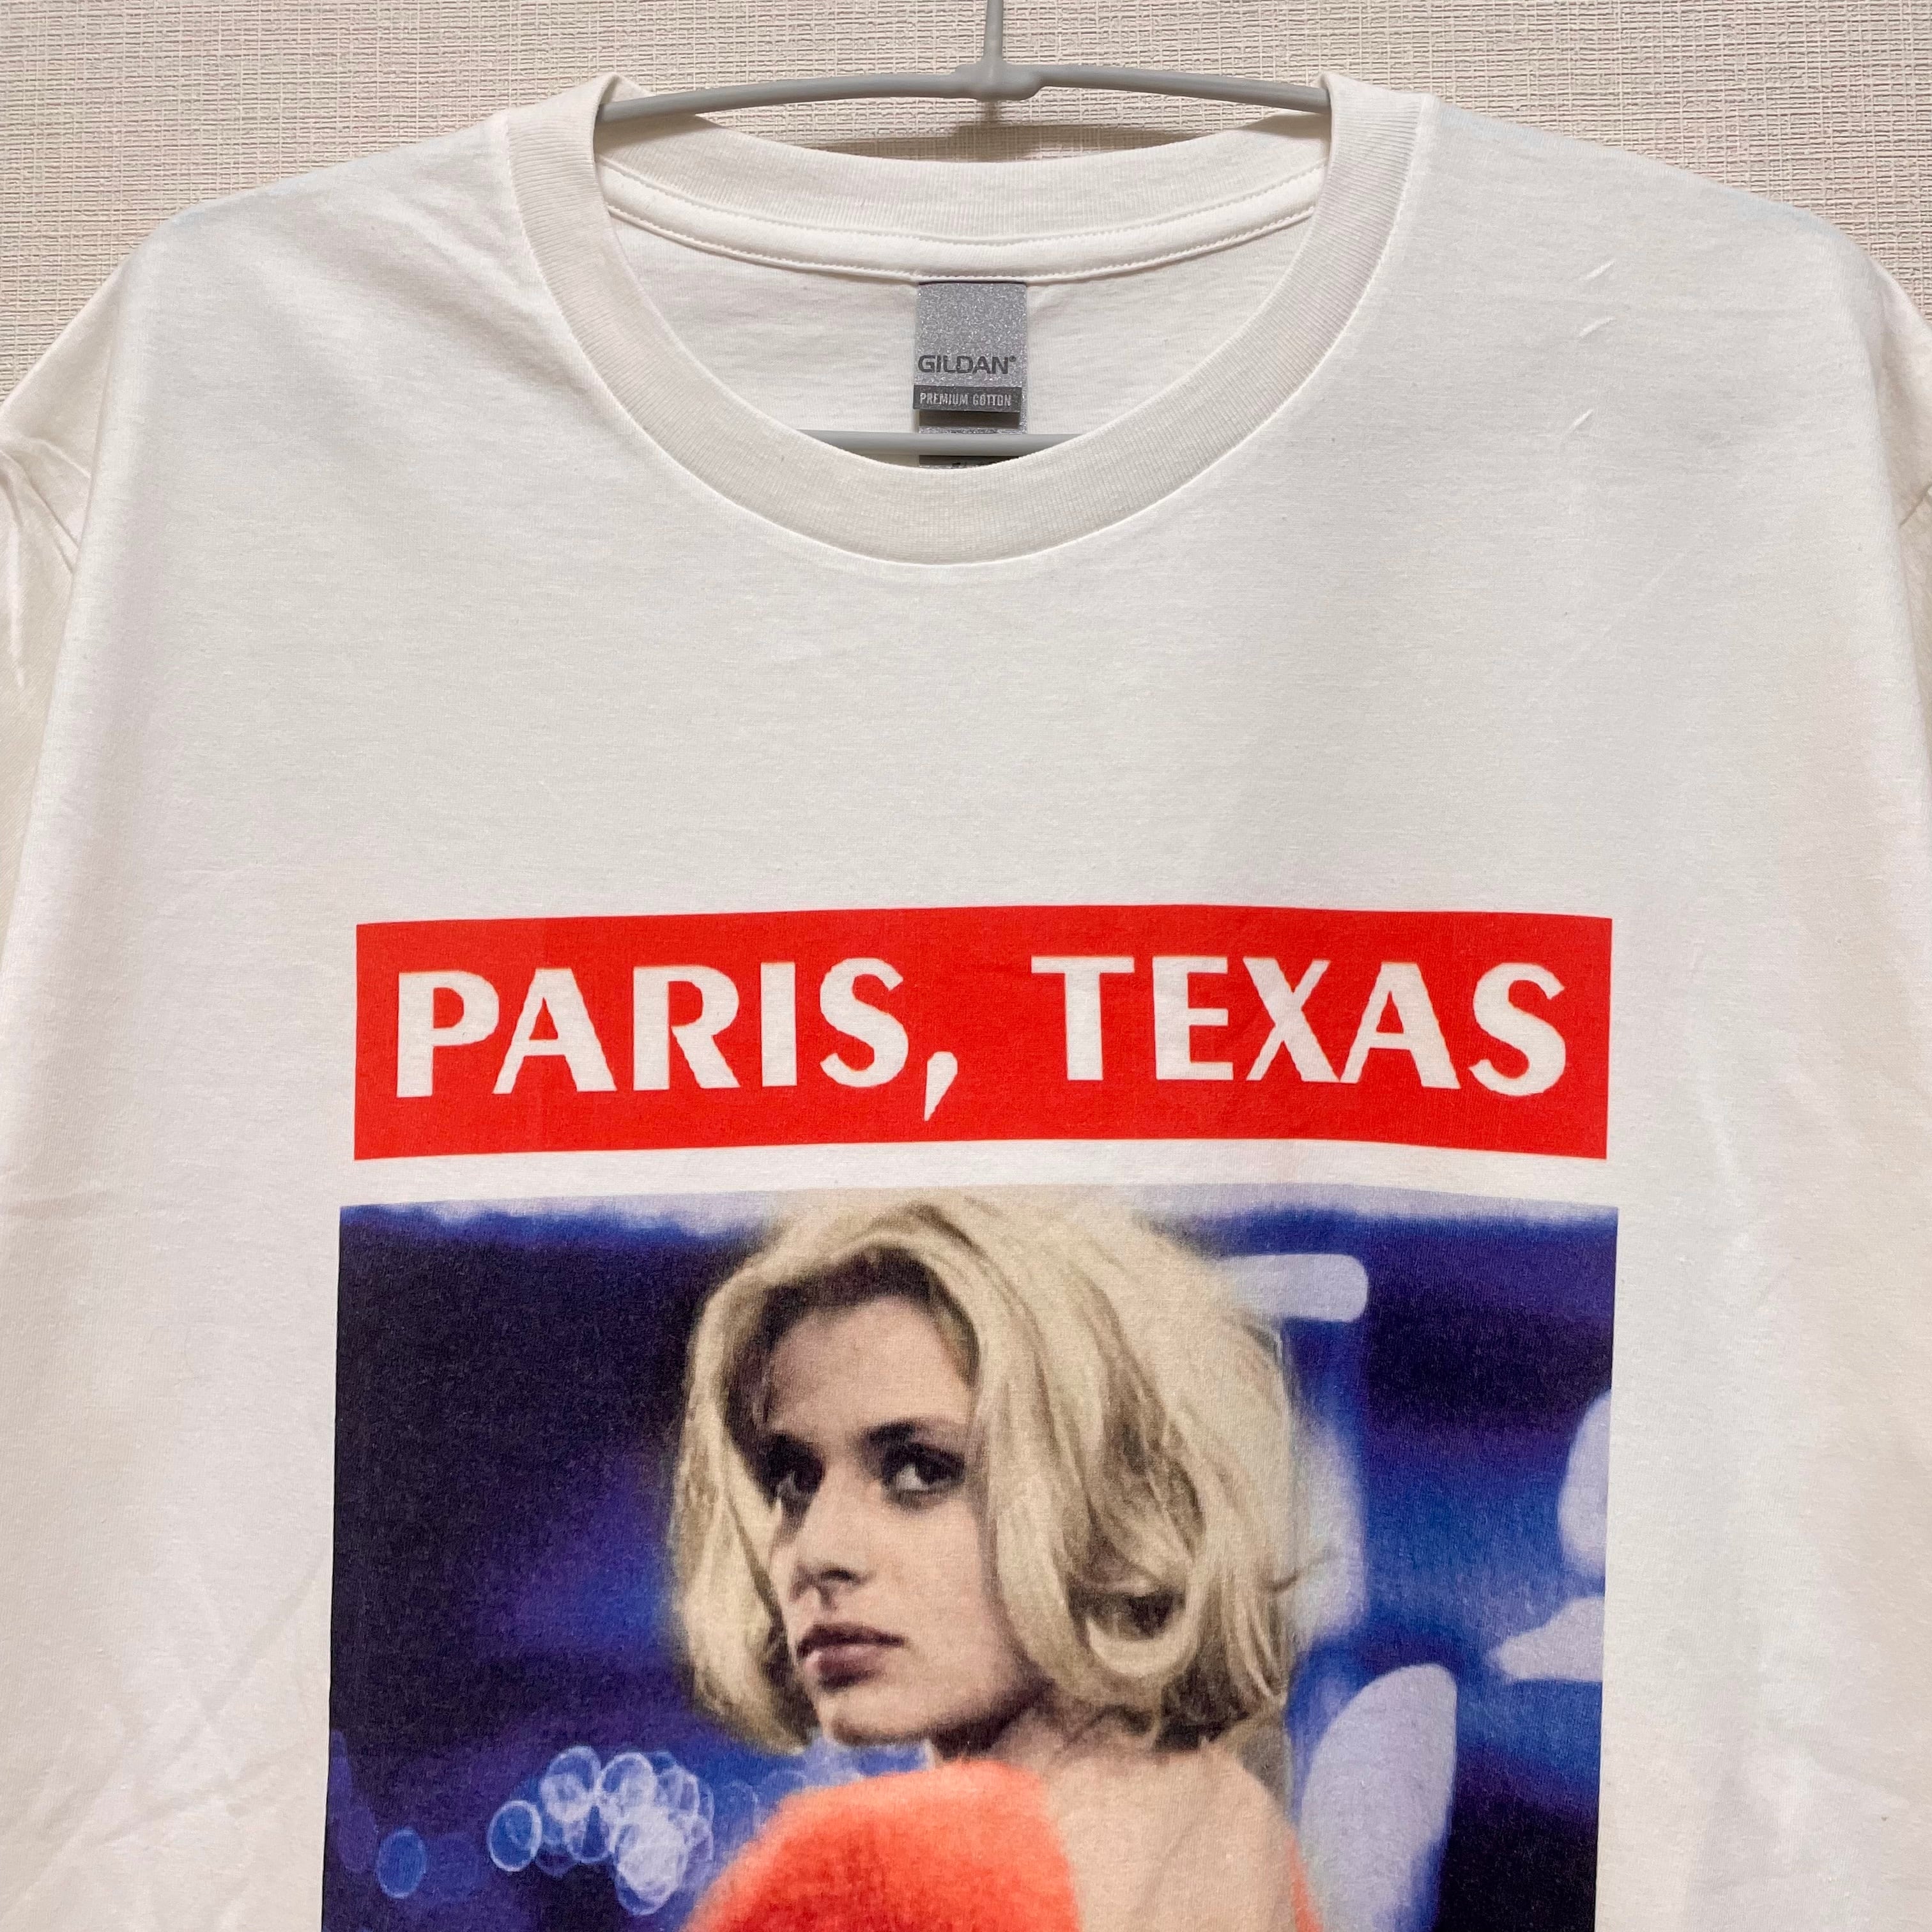 パリ、テキサス Tシャツ Paris, Texas tee